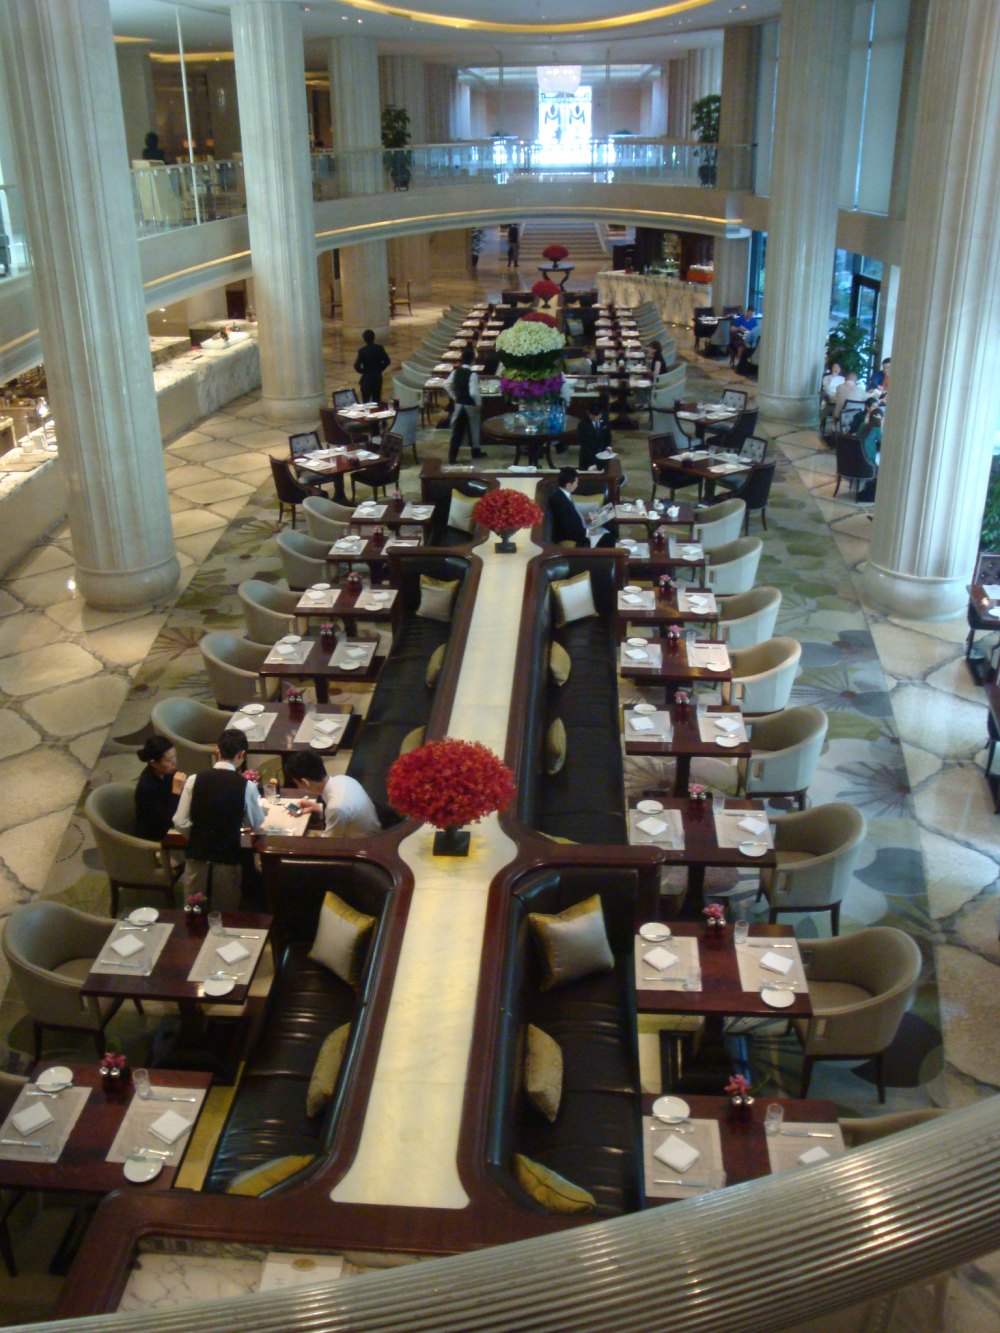 上海华尔道夫酒店(The Waldorf Astoria OnTheBund)(HBA)10.9第10页更新_DSC07789.JPG